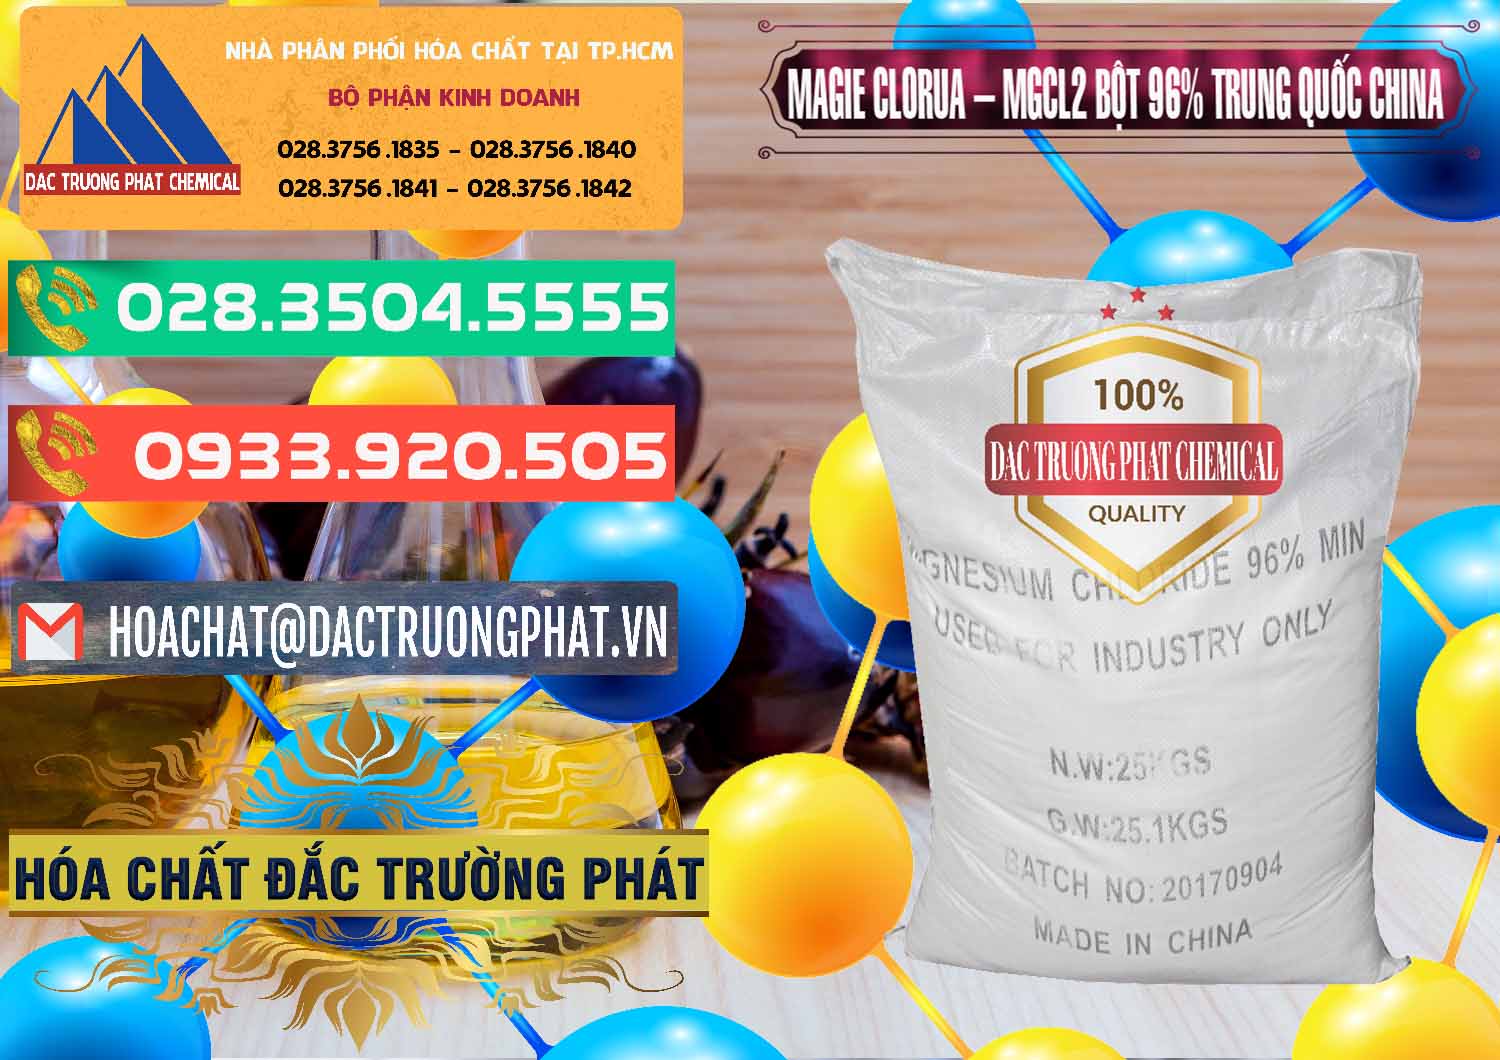 Chuyên nhập khẩu và bán Magie Clorua – MGCL2 96% Dạng Bột Bao Chữ Đen Trung Quốc China - 0205 - Nơi bán và cung cấp hóa chất tại TP.HCM - congtyhoachat.com.vn